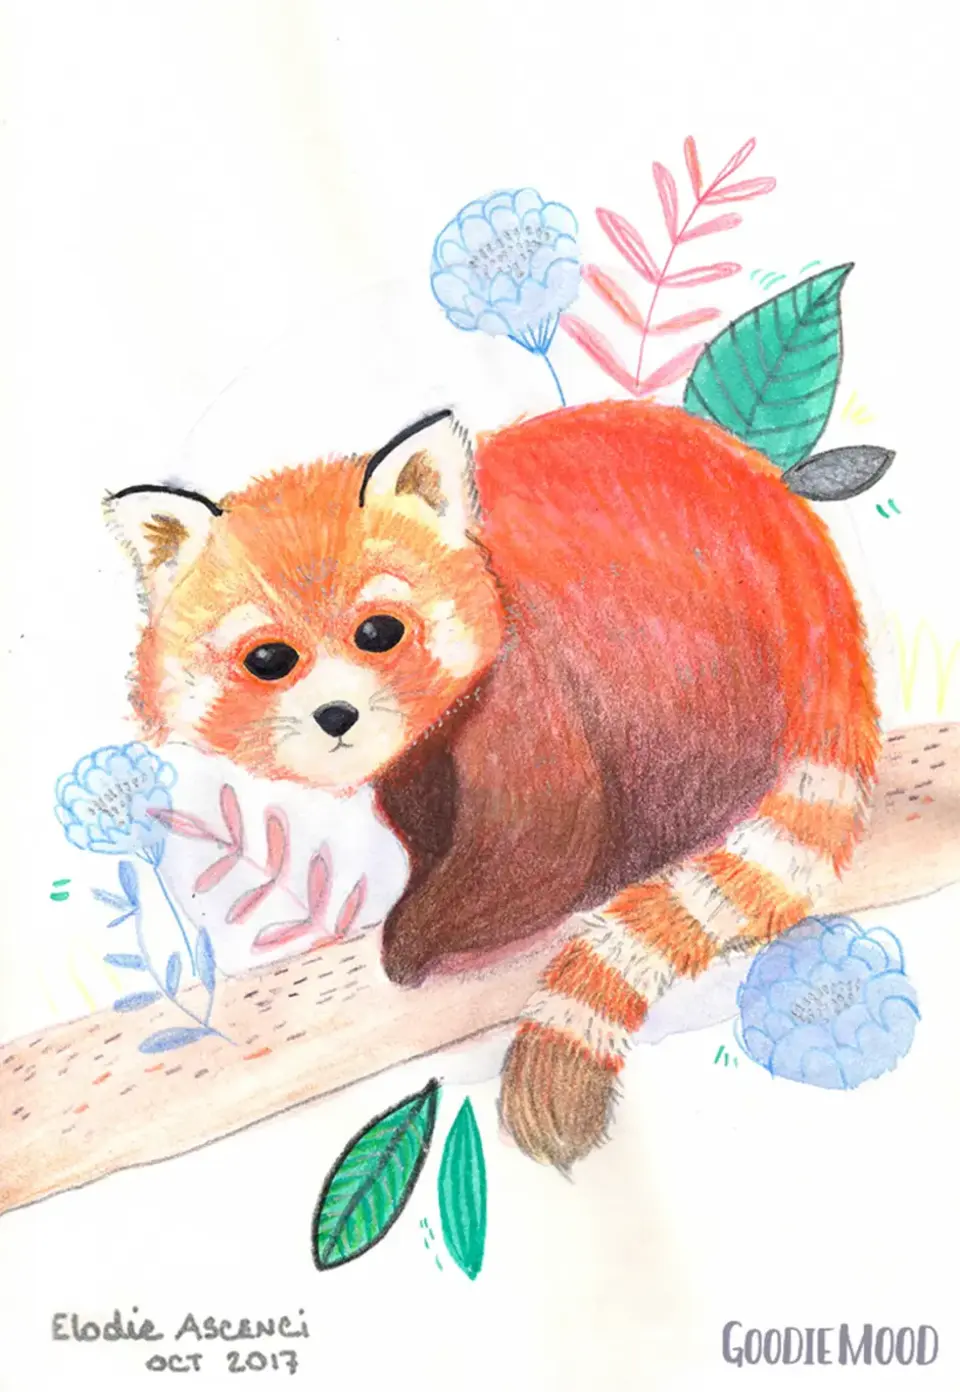 Рисунок красной панды